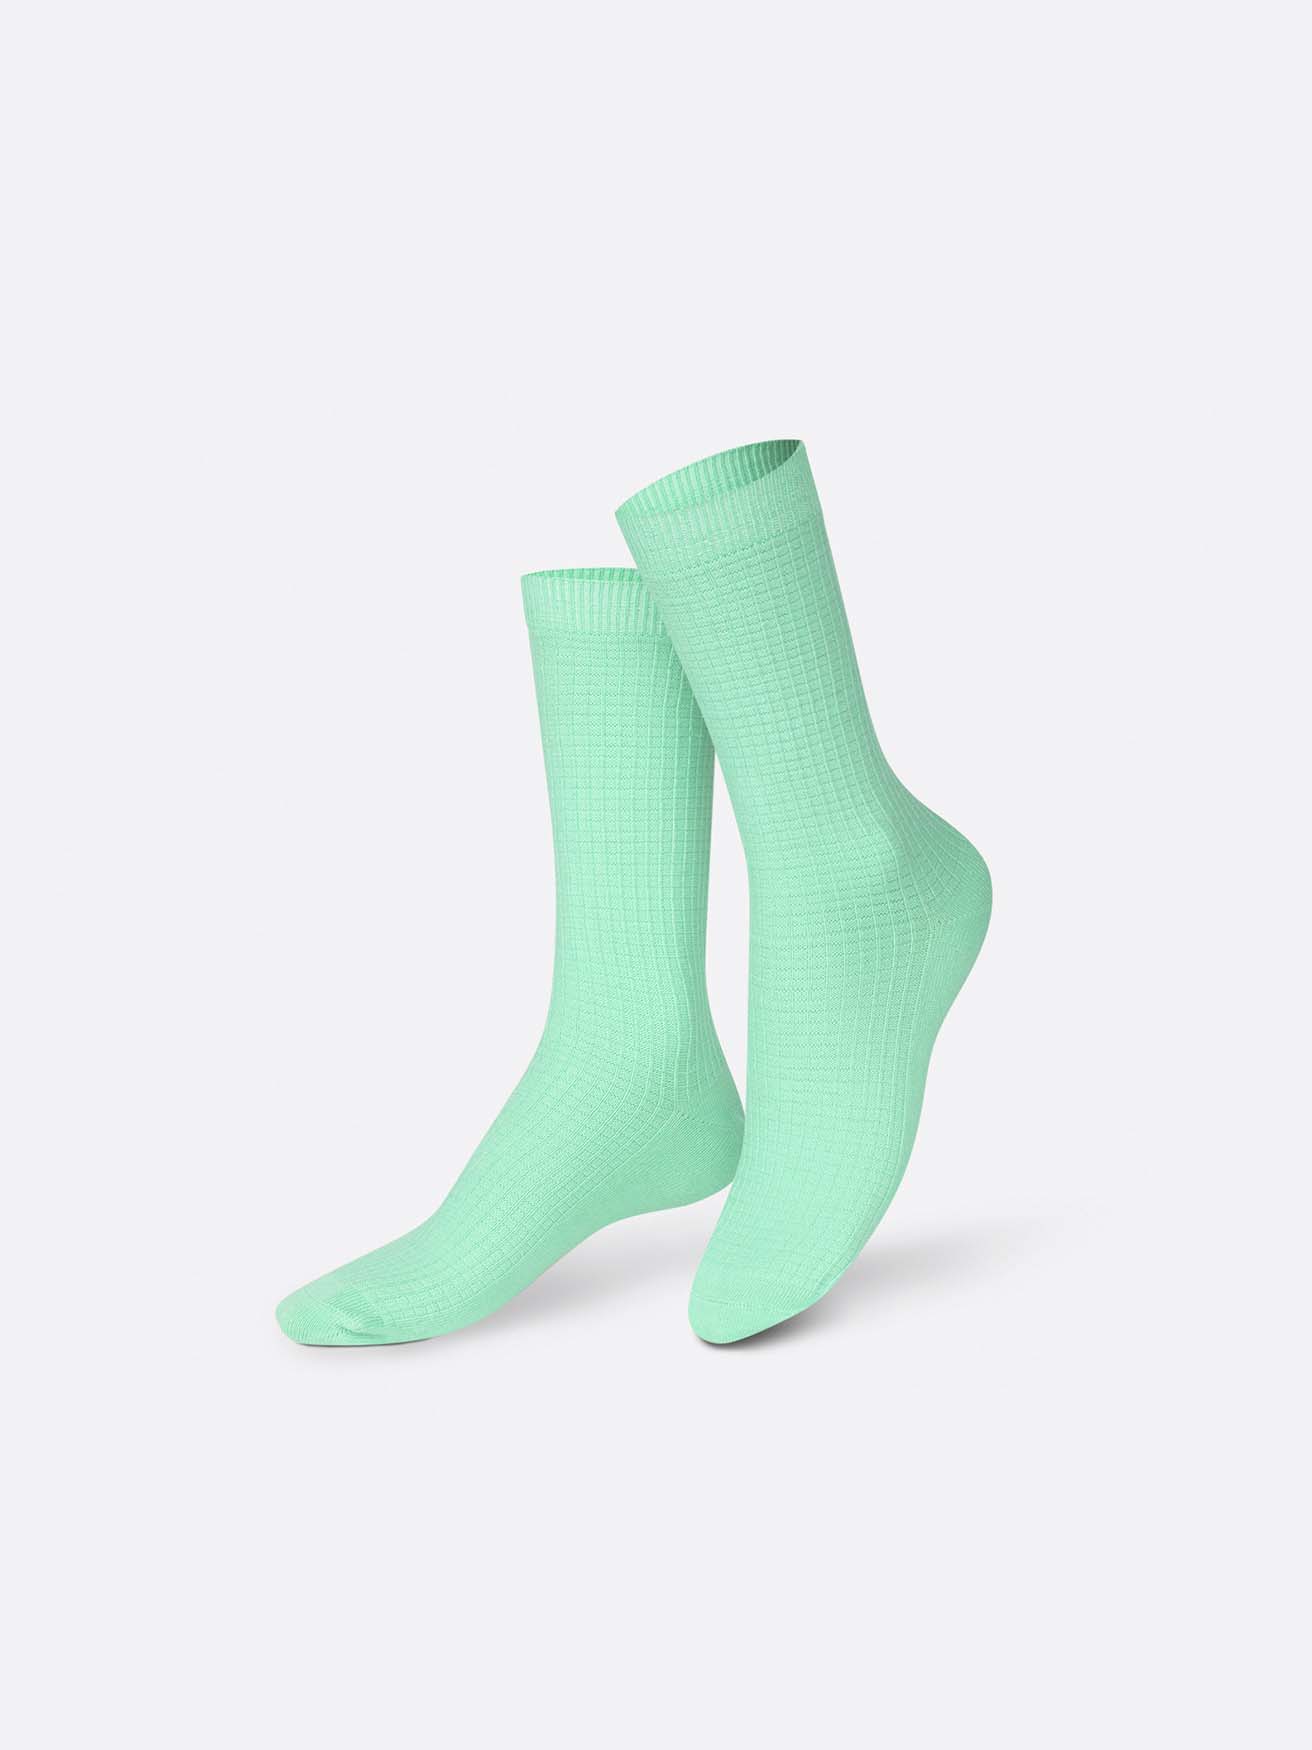 
                  
                    Yin Yoga Grüne Socken
                  
                